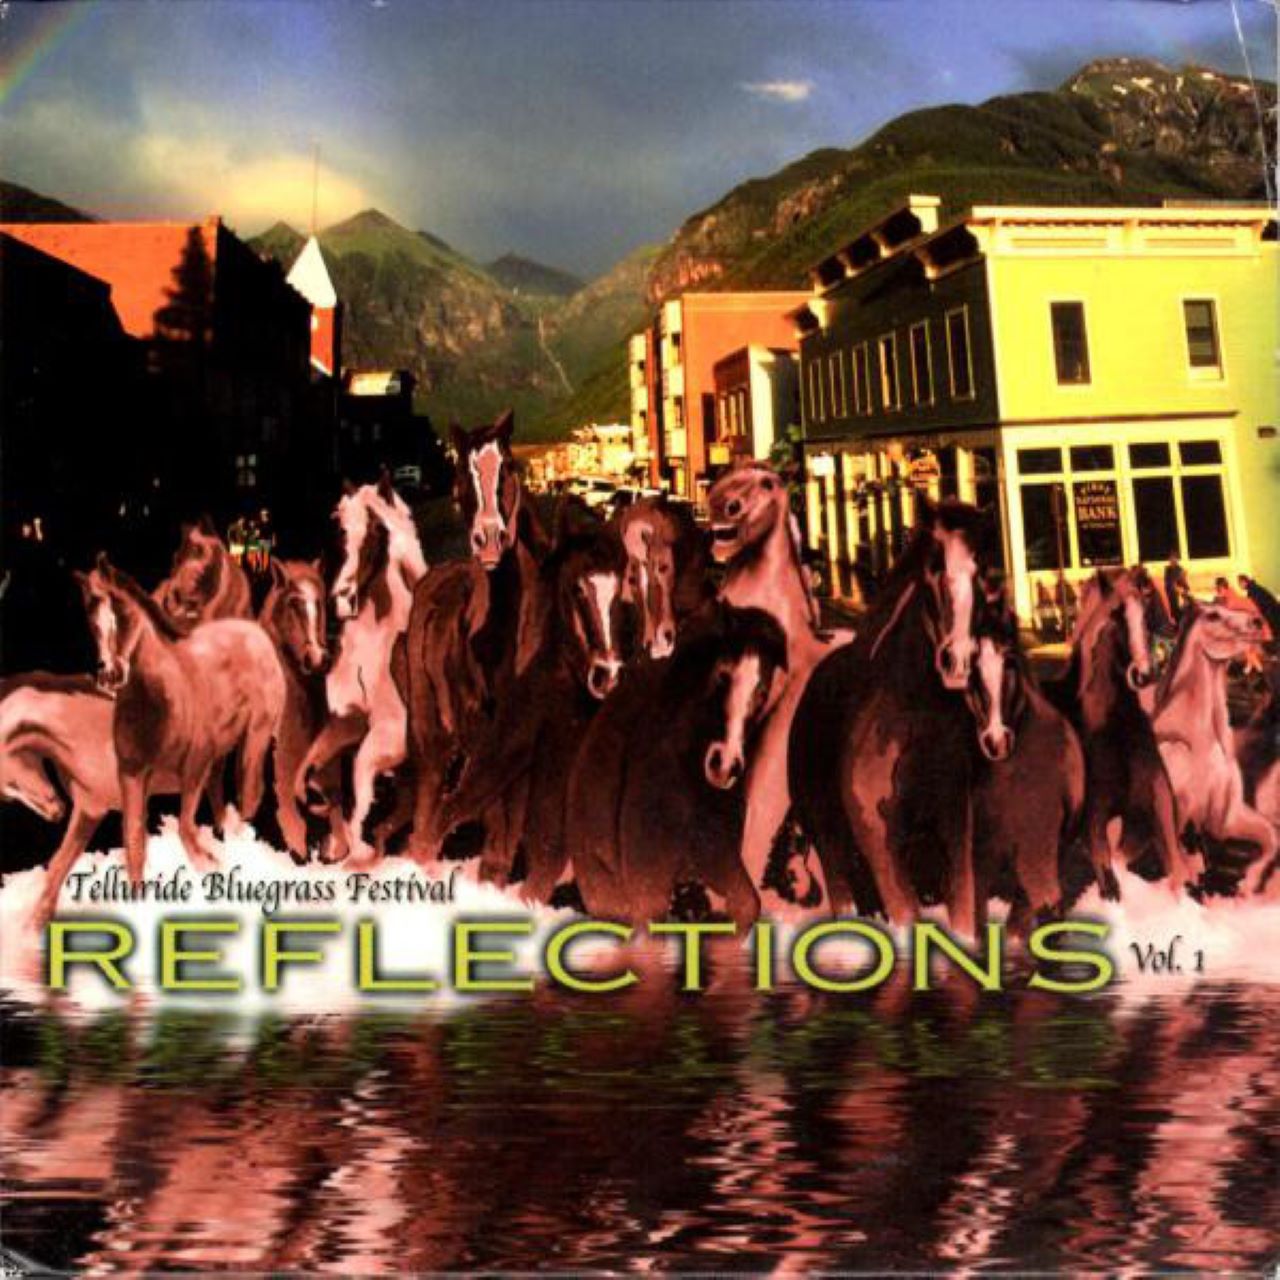 A.A.V.V. - Reflections Vol.1 - Telluride Bluegrass Festival cover album